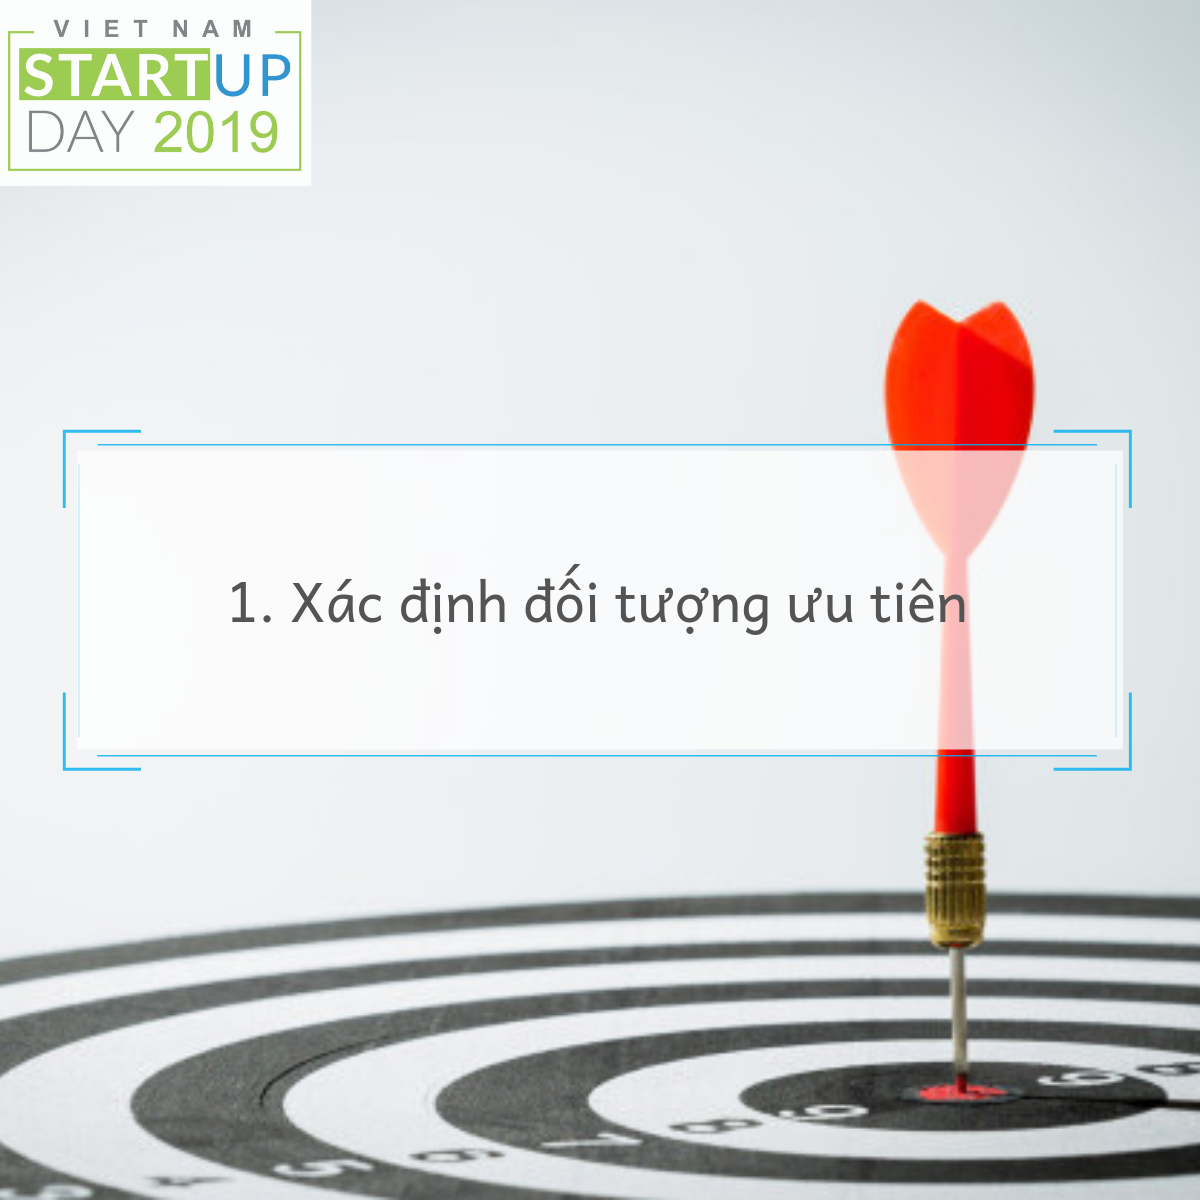 vietnam startup day 2019